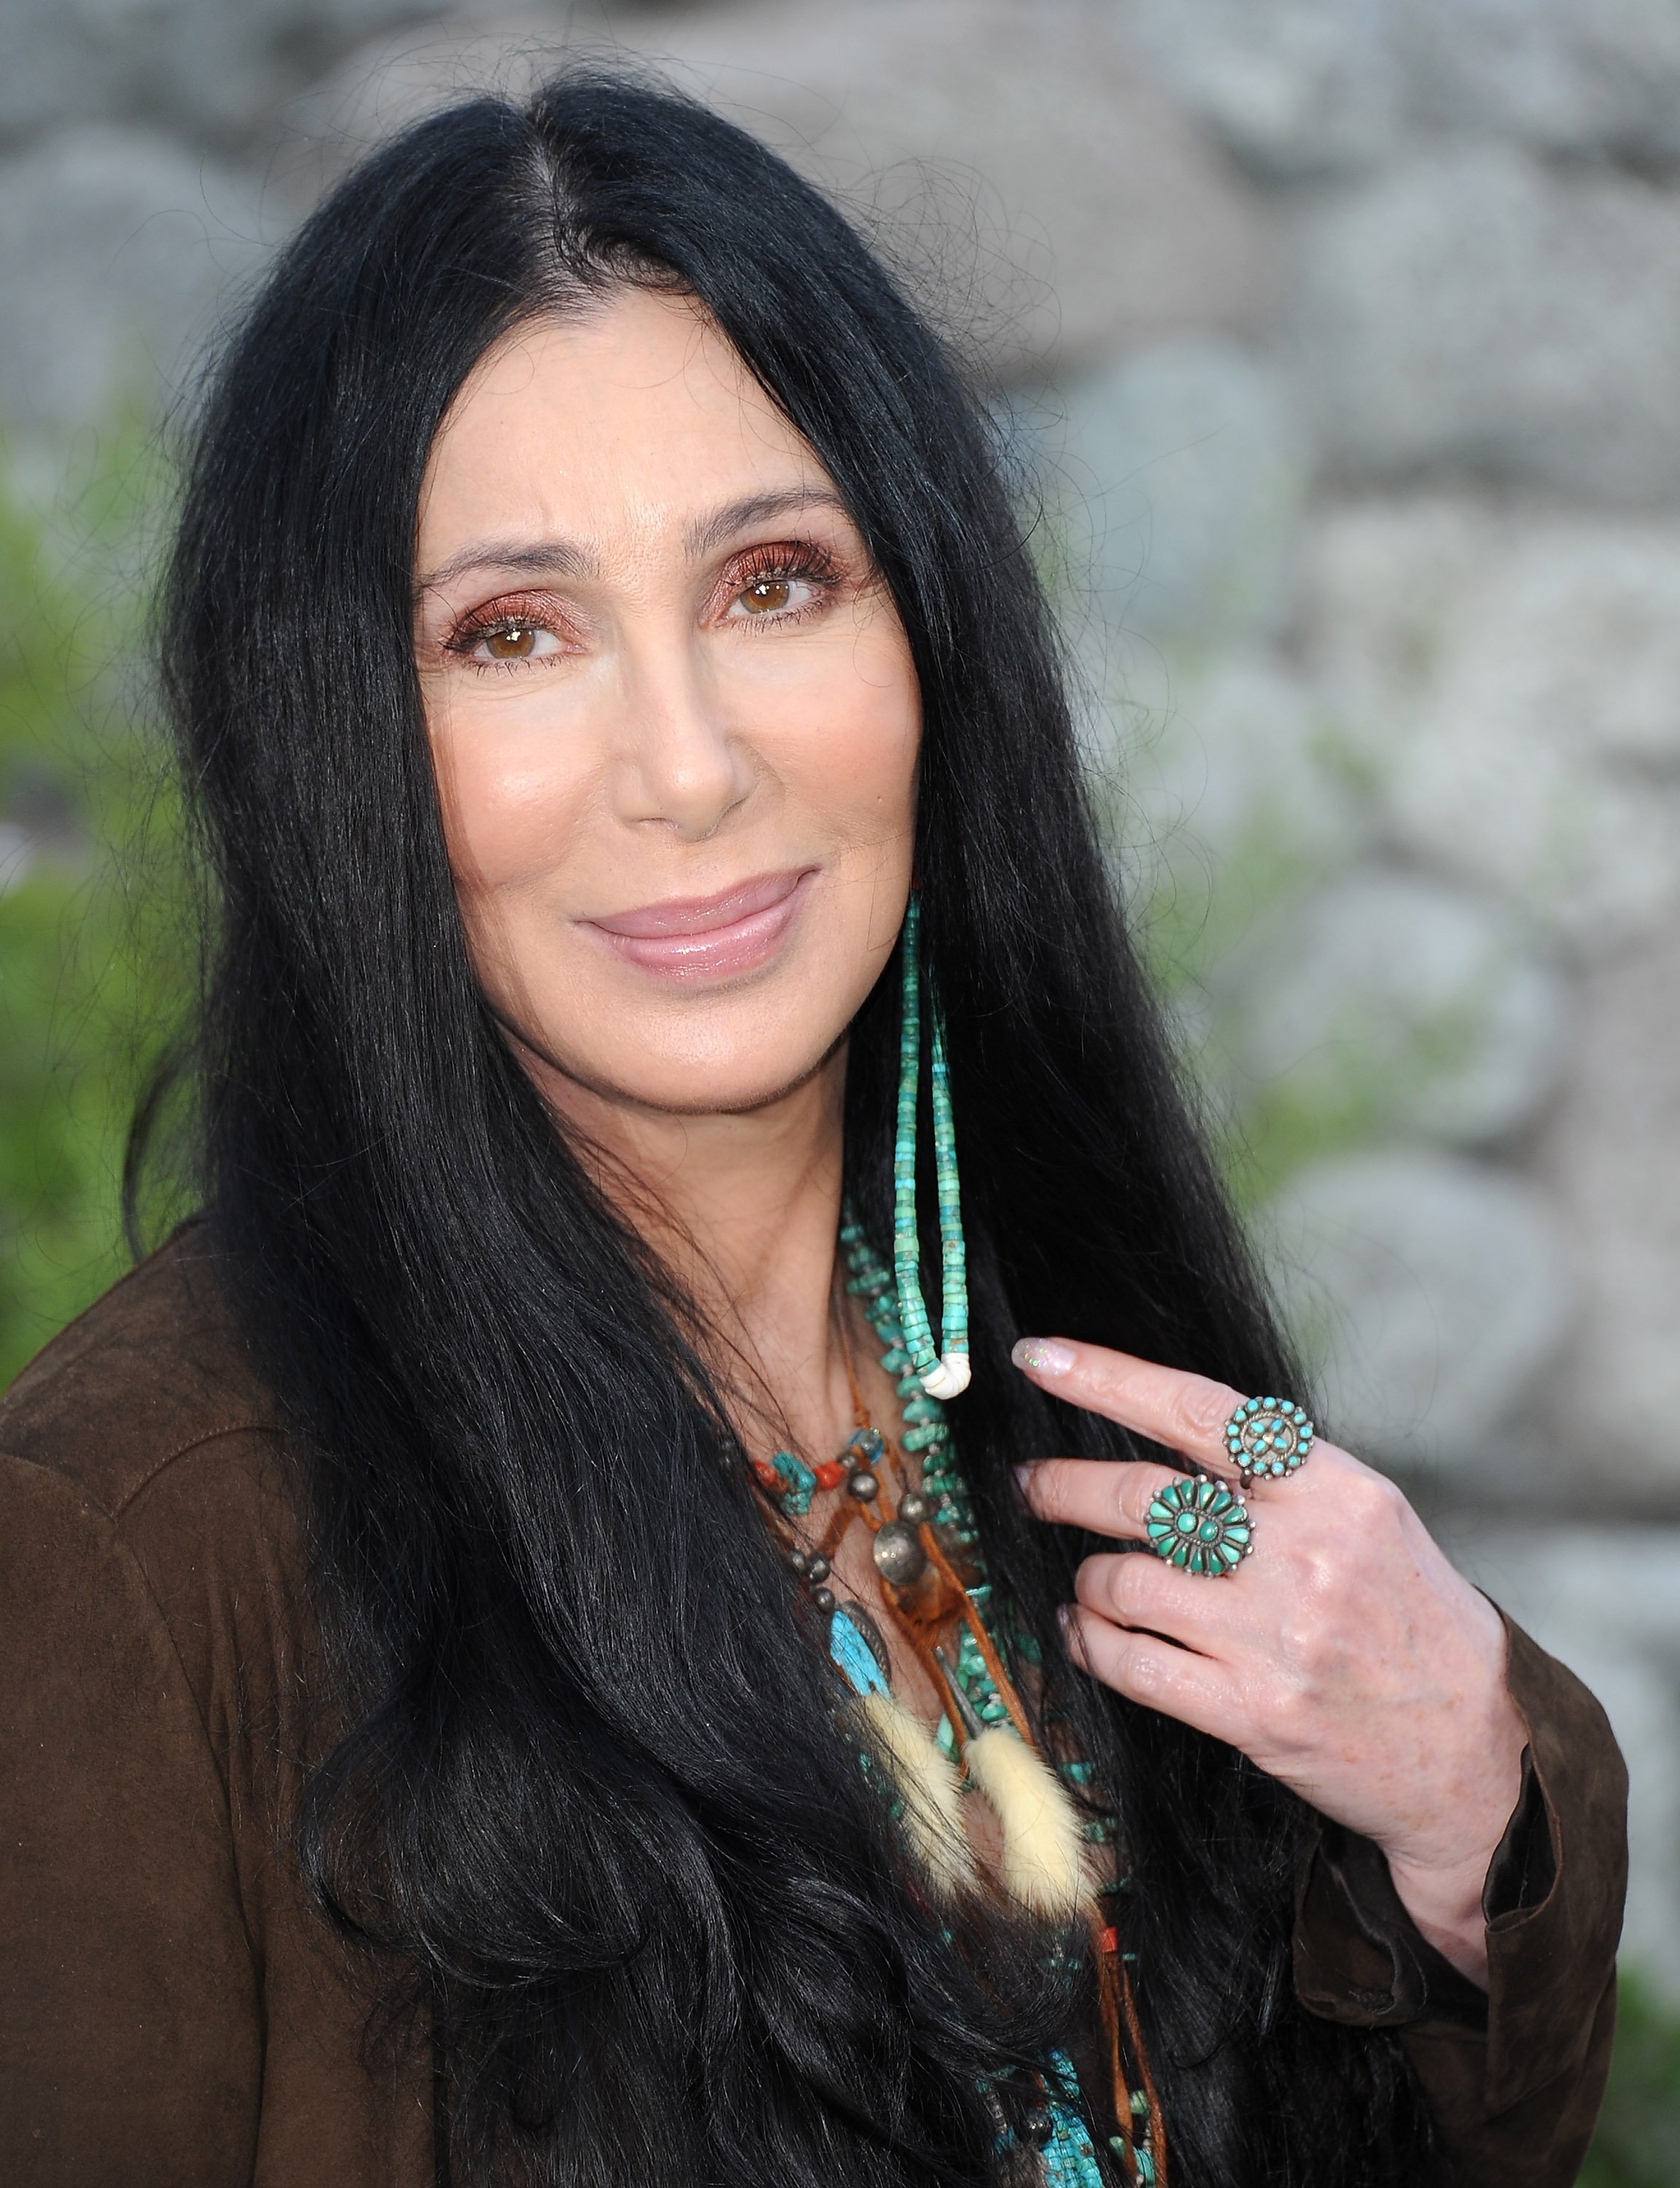 Cher llega al estreno de "The Zookeeper" en el Regency Village Theatre el 6 de julio de 2011, en Los Ángeles, California. | Fuente: Getty Images